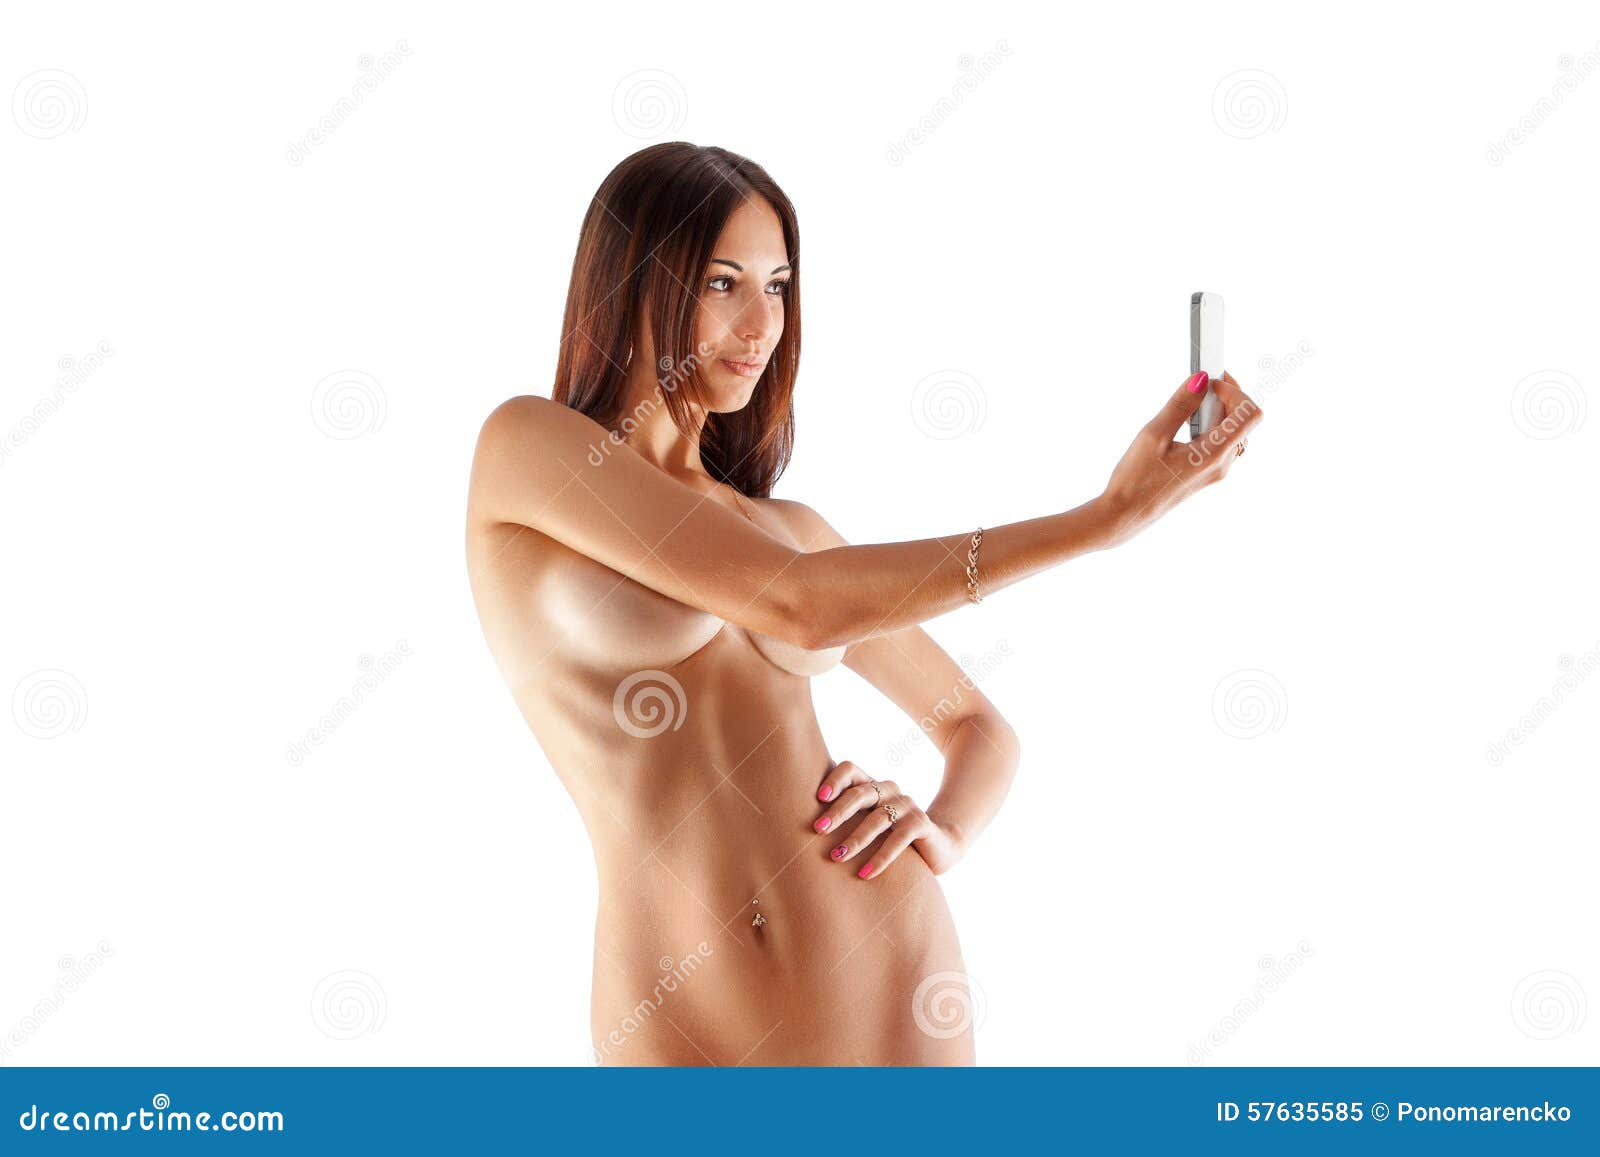 Erotik selfie